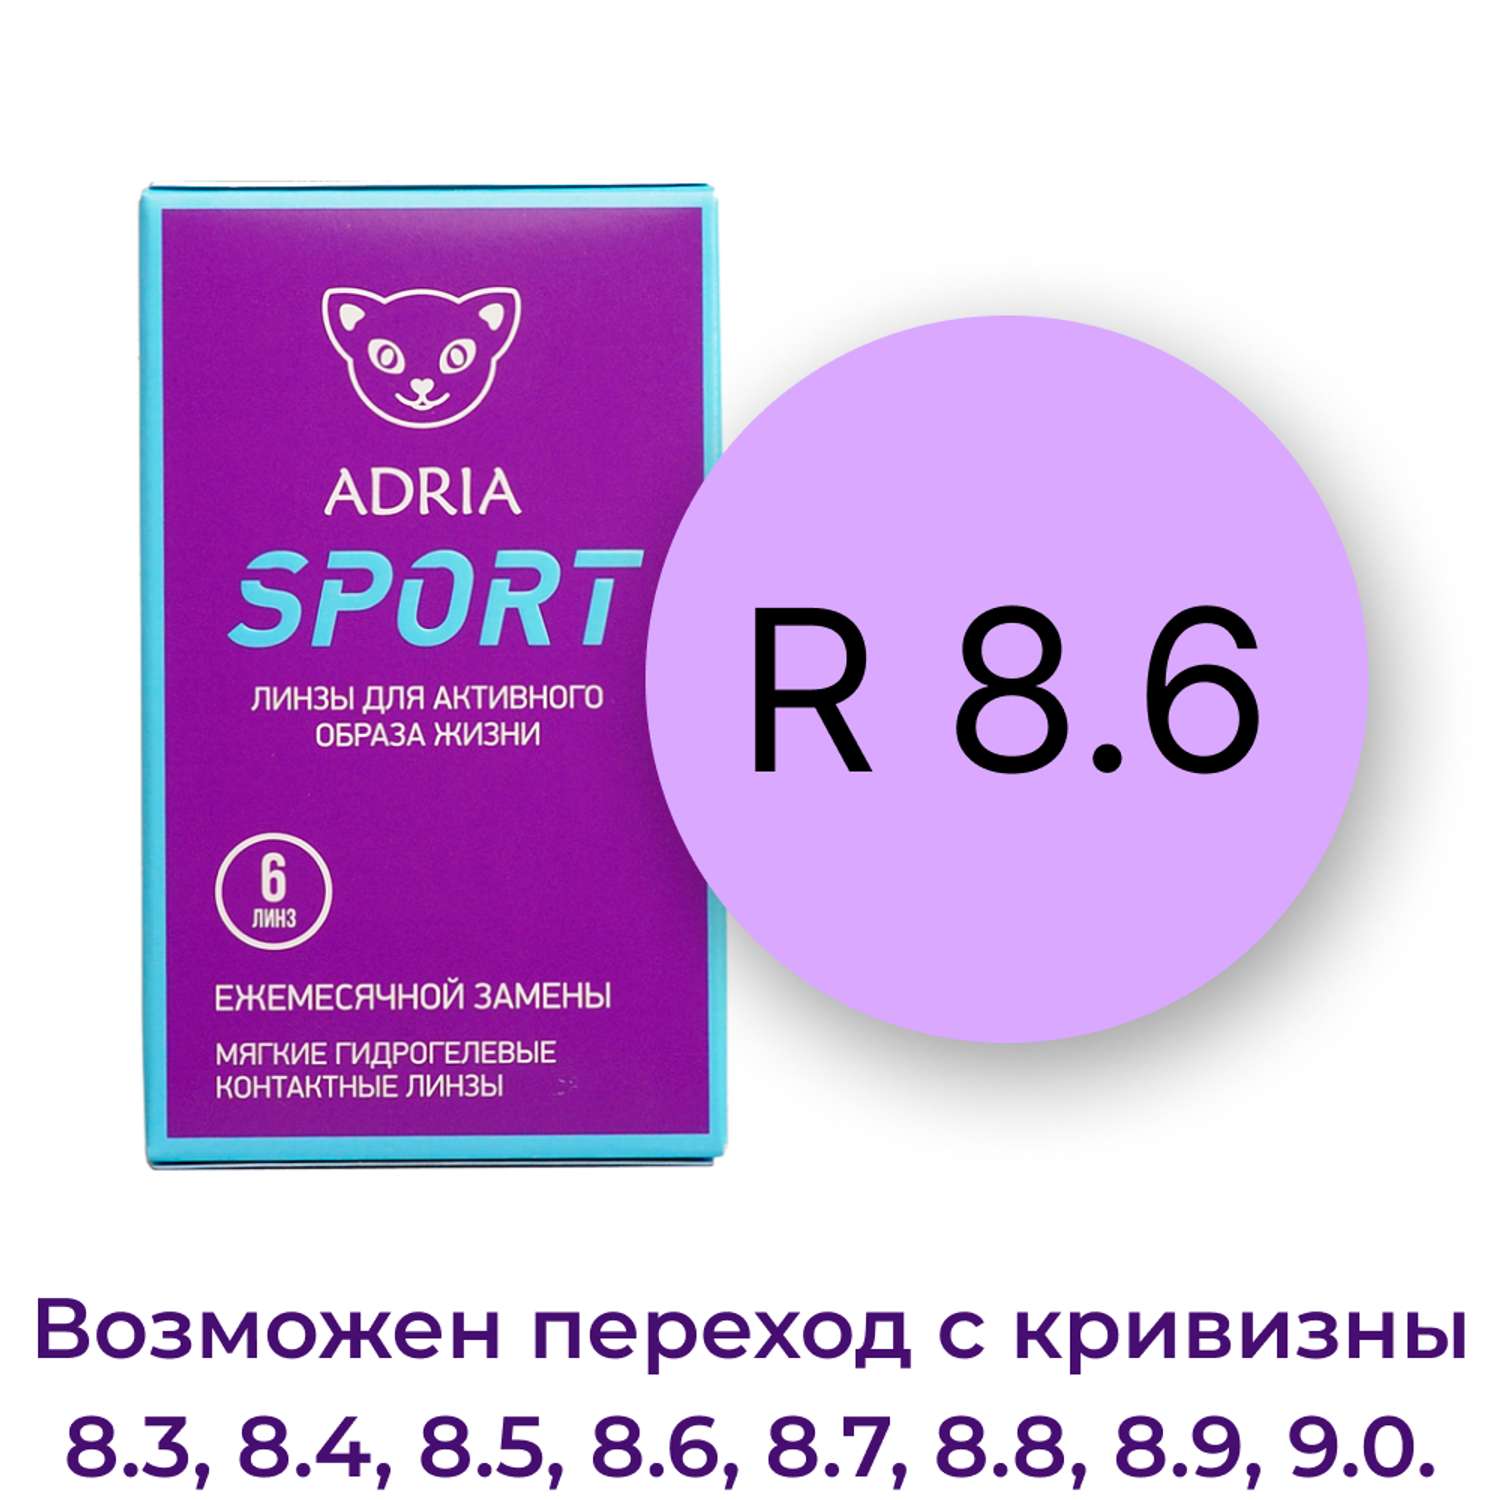 Контактные линзы ADRIA Sport 6 линз R 8.6 -5.75 - фото 3